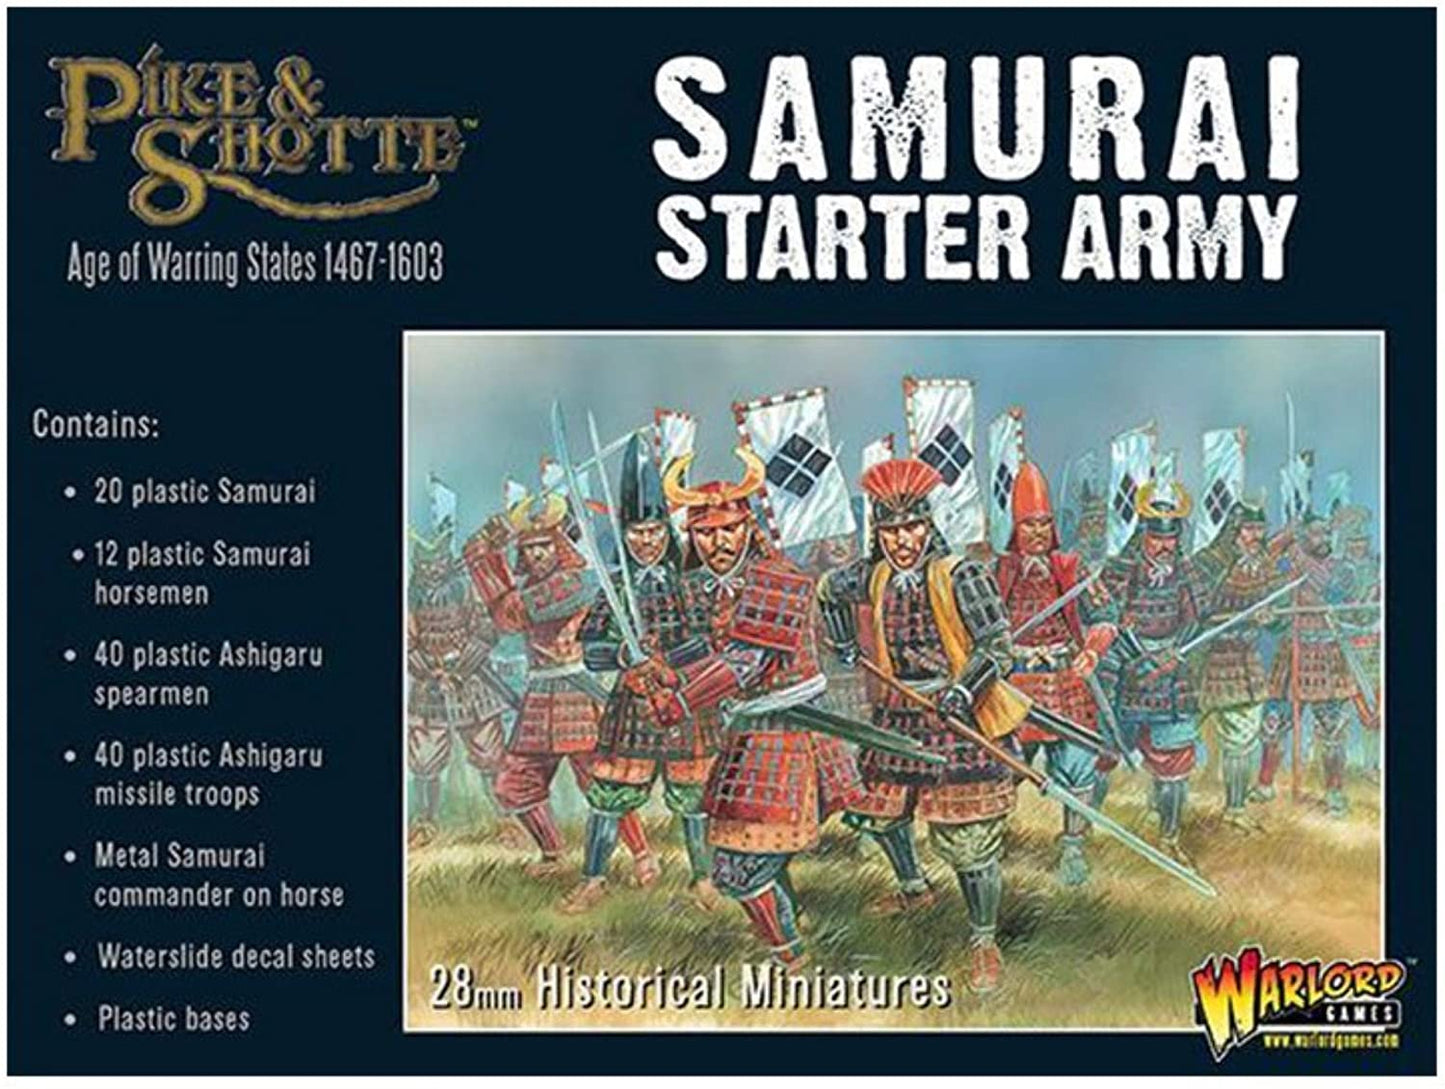 Warlord Games Pike & Shotte Samurai Starter Army #202014001